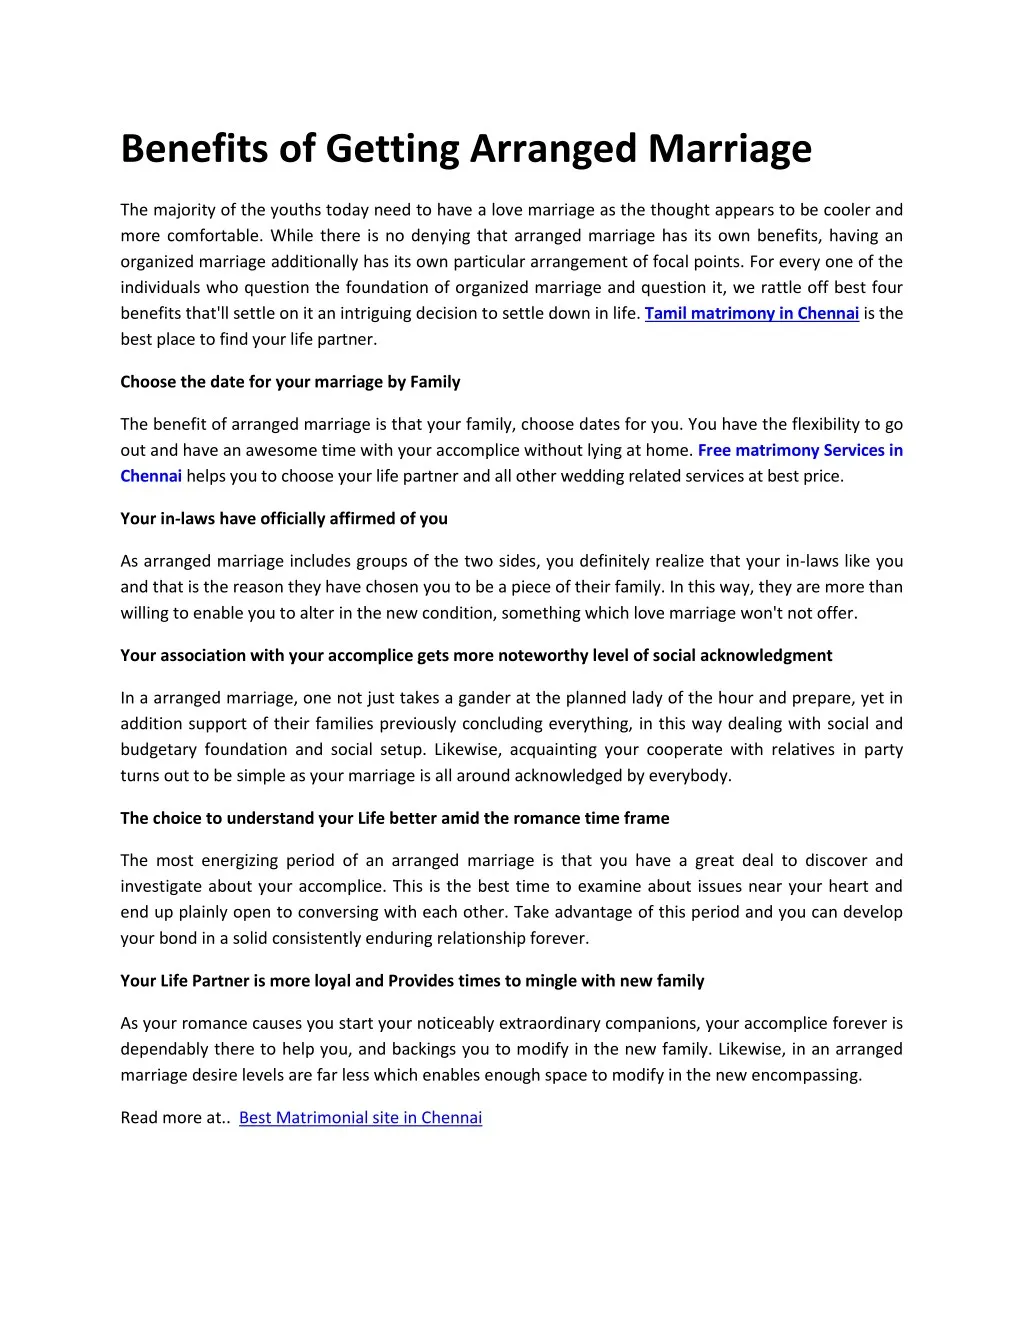 arranged marriage advantages